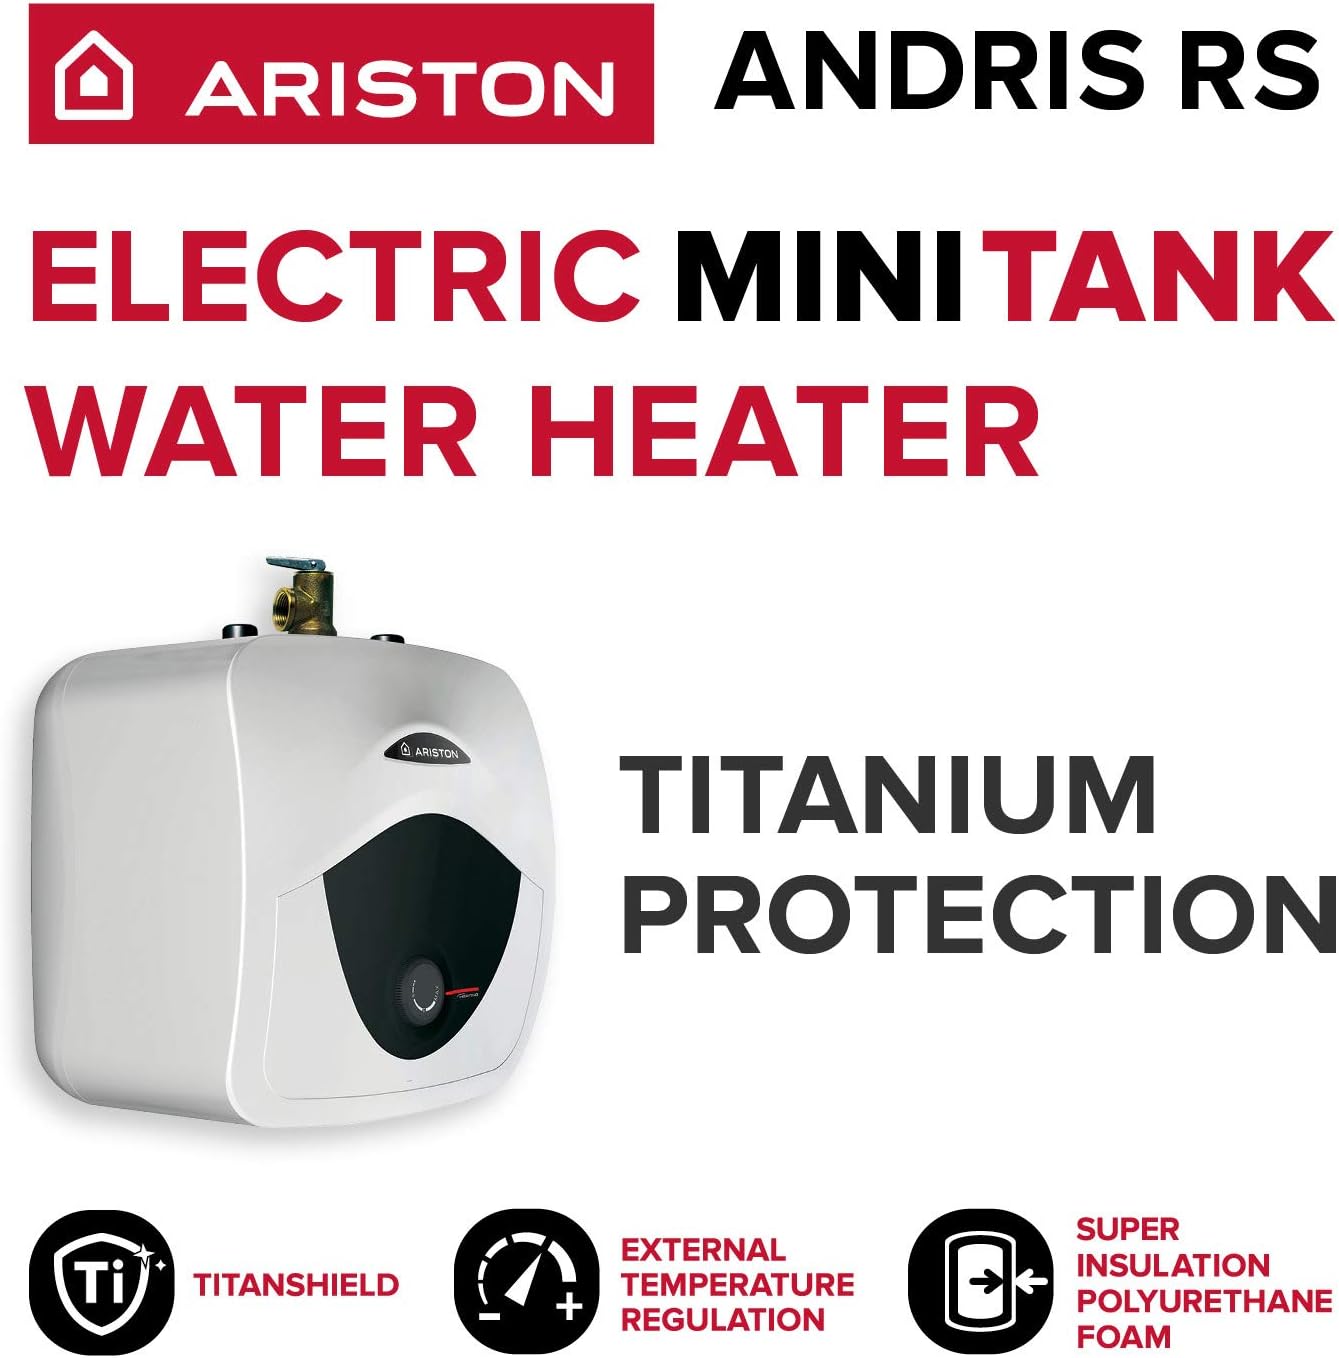 Ariston Andris 2.5 Gallon 120-Volt Corded Point of Use Mini-Tank Water Heater - $100